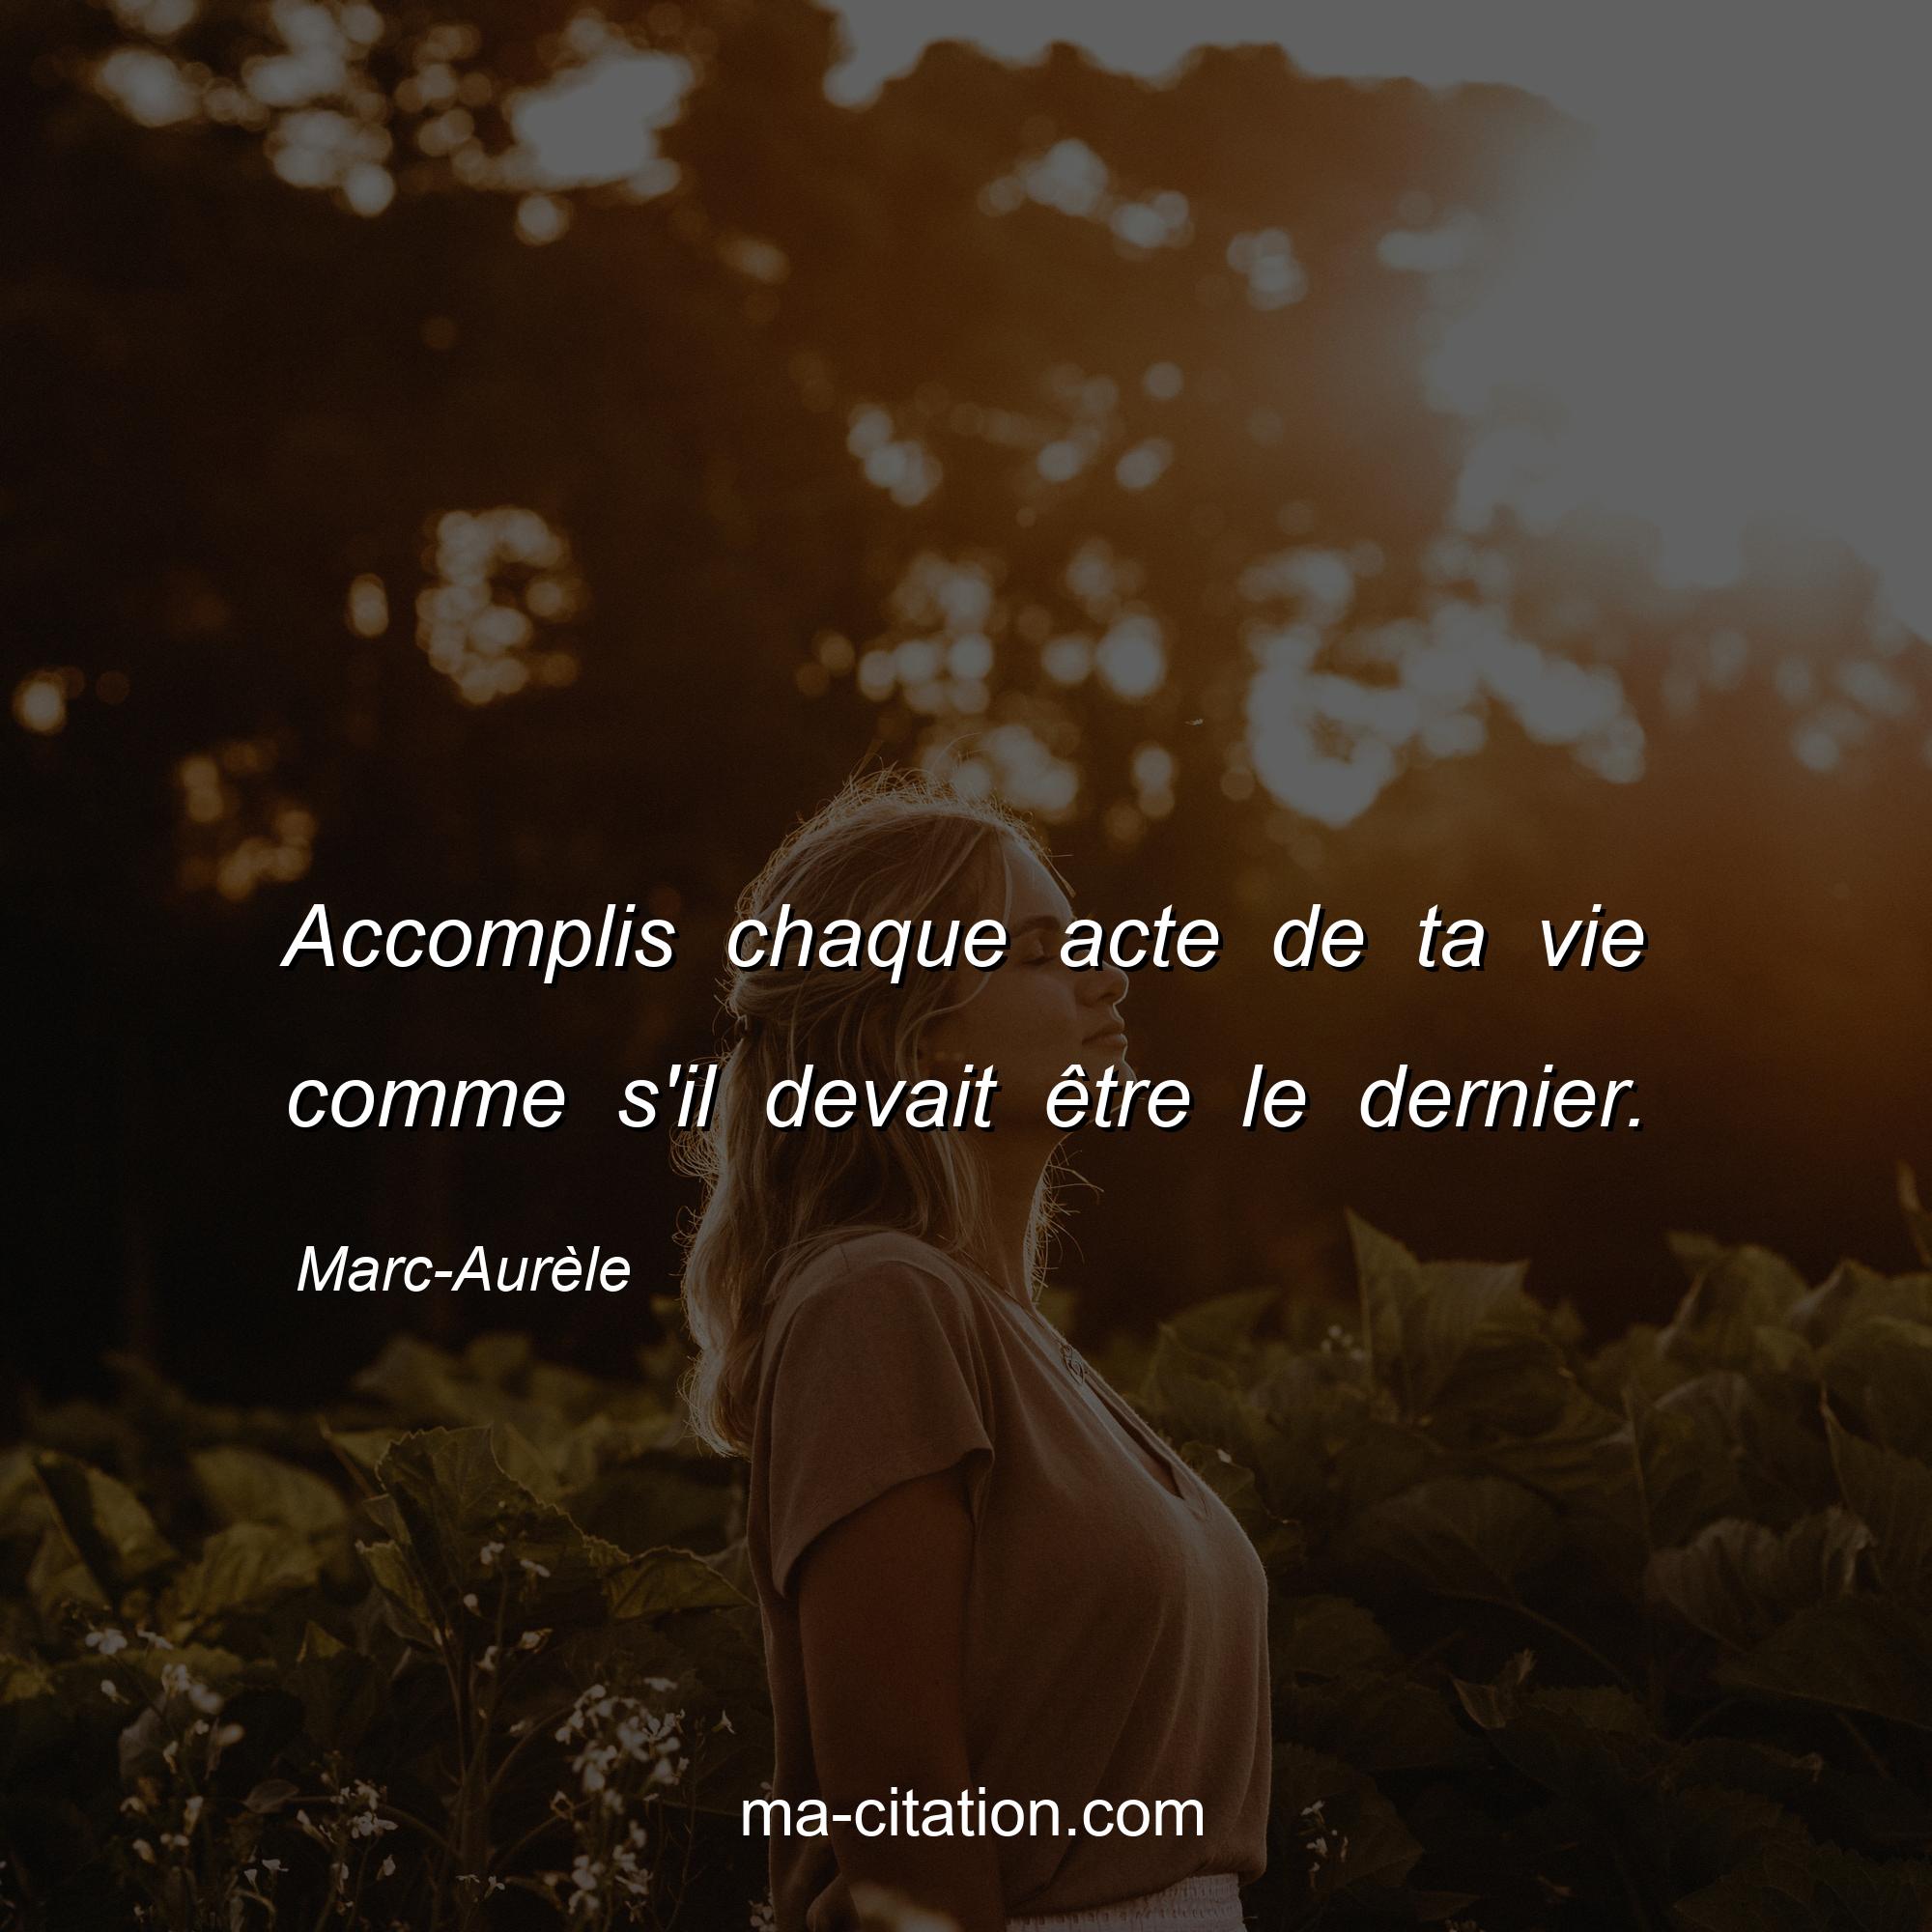 Marc-Aurèle : Accomplis chaque acte de ta vie comme s'il devait être le dernier.